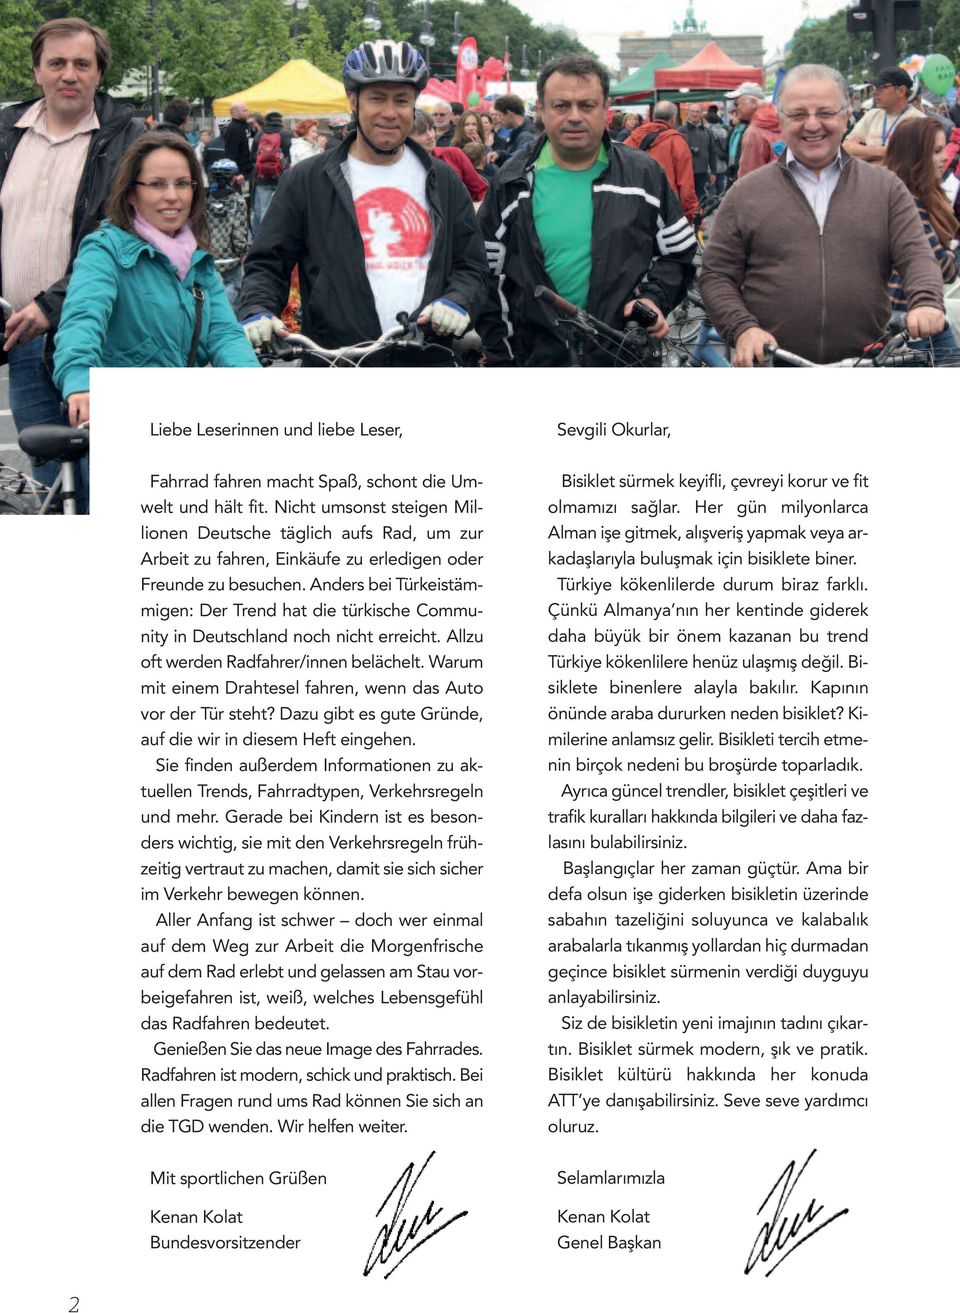 Anders bei Türkeistämmigen: Der Trend hat die türkische Community in Deutschland noch nicht erreicht. Allzu oft werden Radfahrer/innen belächelt.